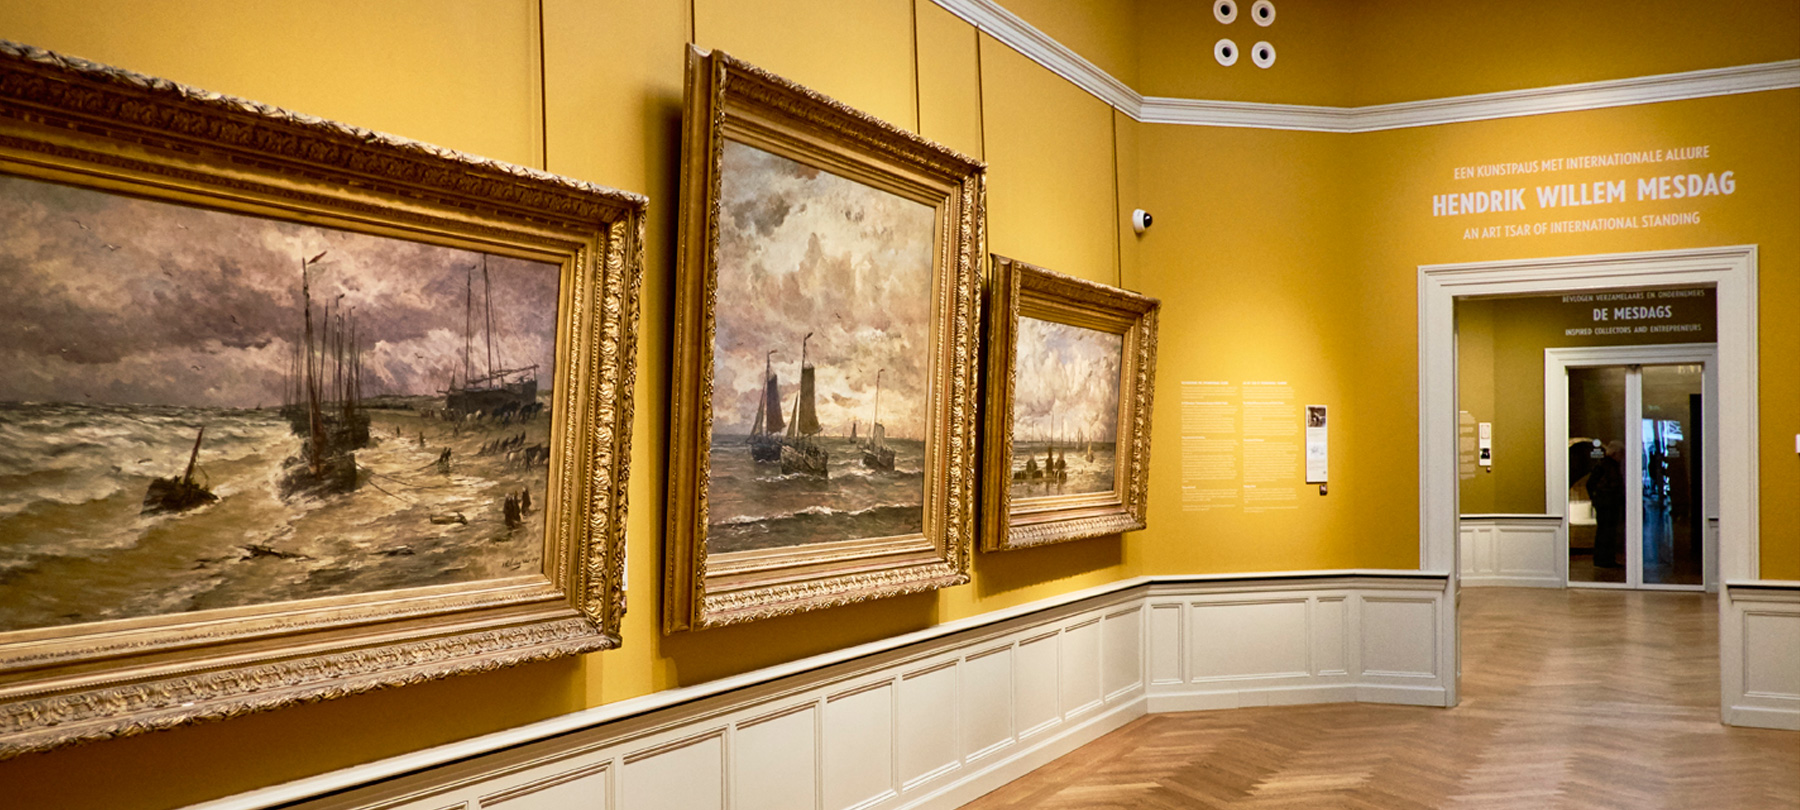 Het Panorama Mesdag, daterend uit de jaren tachtig van de 19e eeuw, is het grootste schilderij van Nederland.